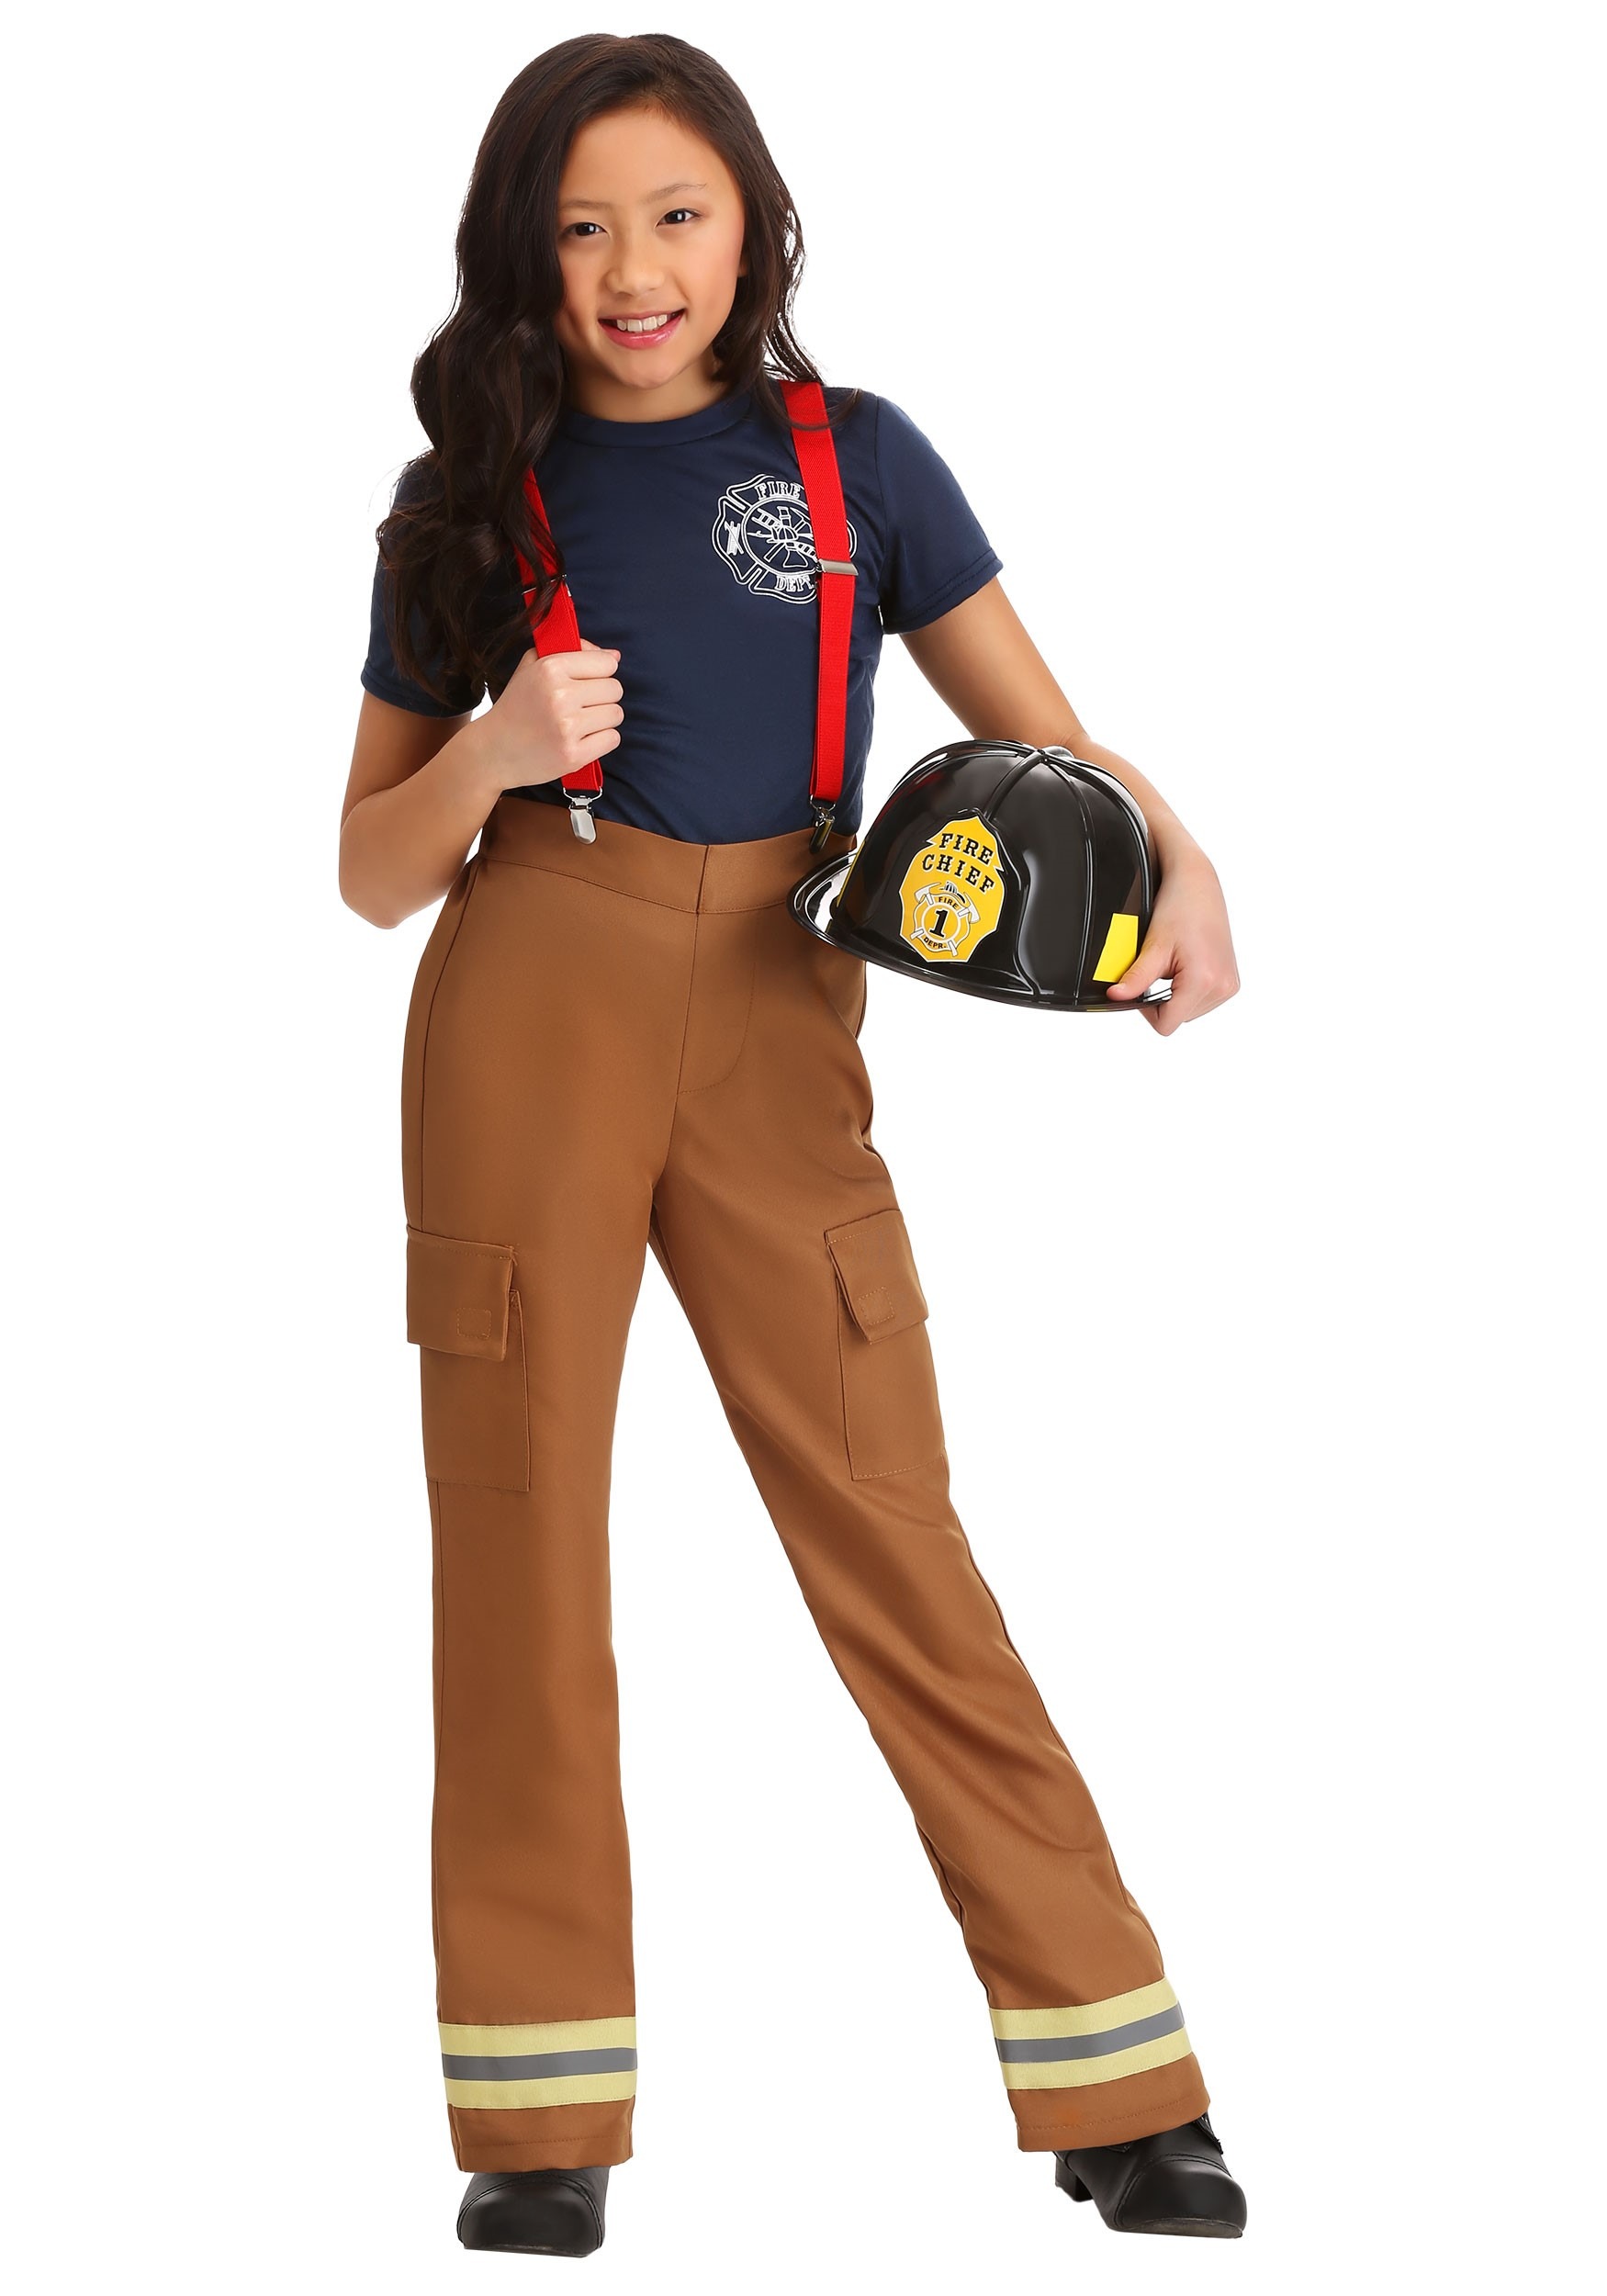 Fire Captain Costume Girl’s